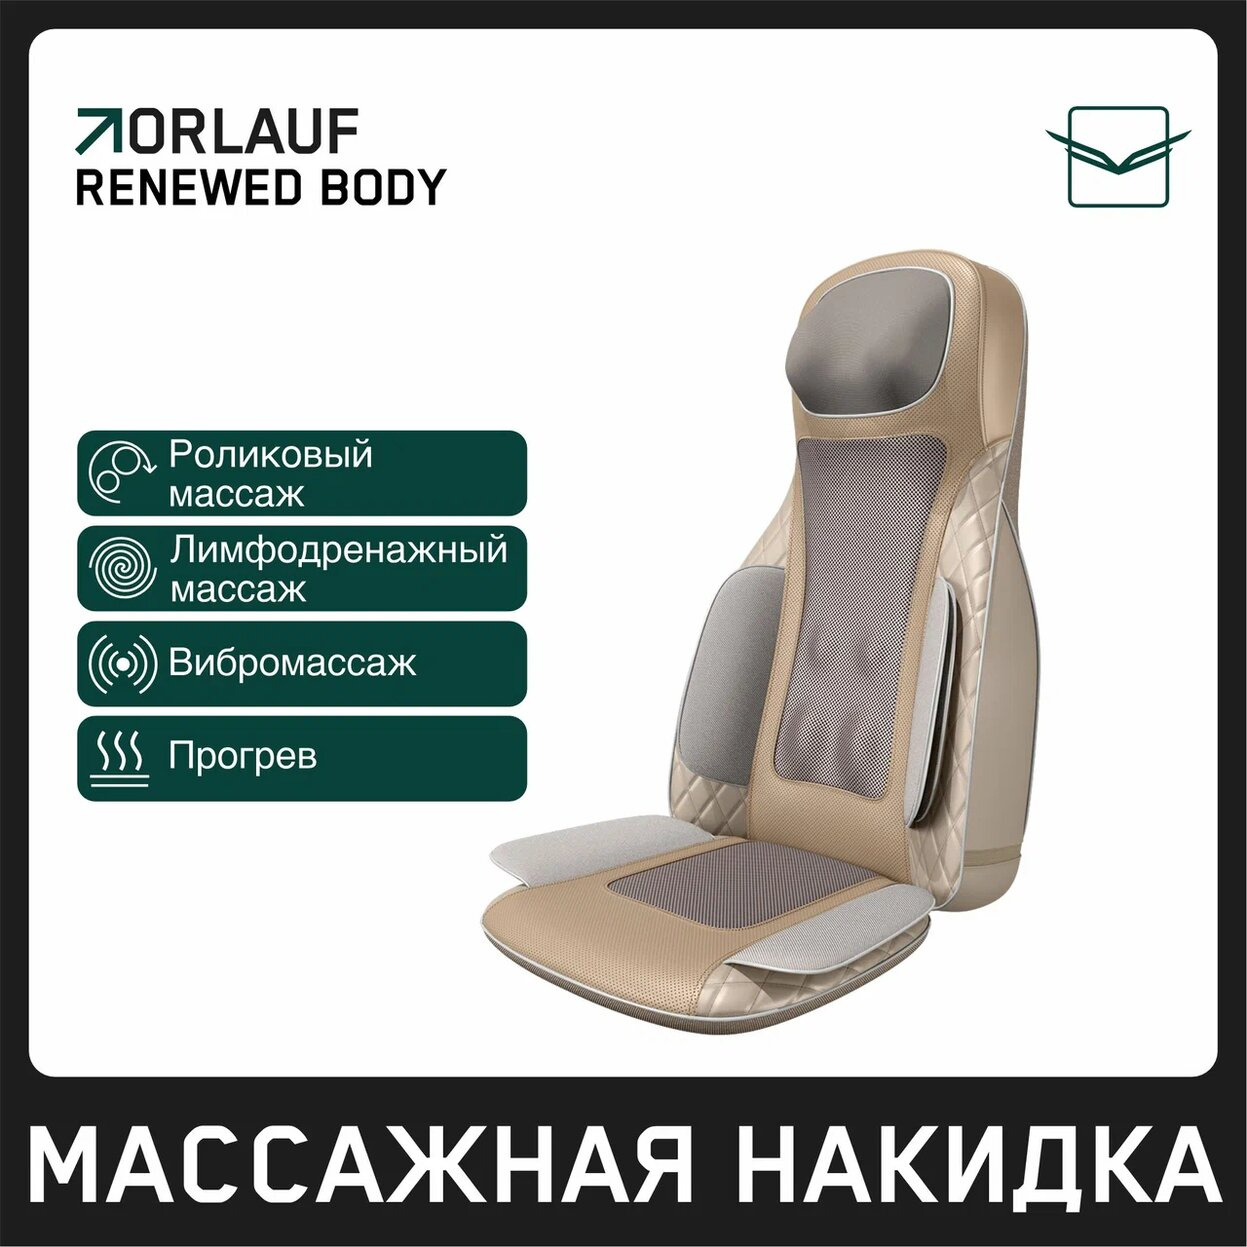 Renewed Body в Перми по цене 39900 ₽ в категории массажные накидки Orlauf